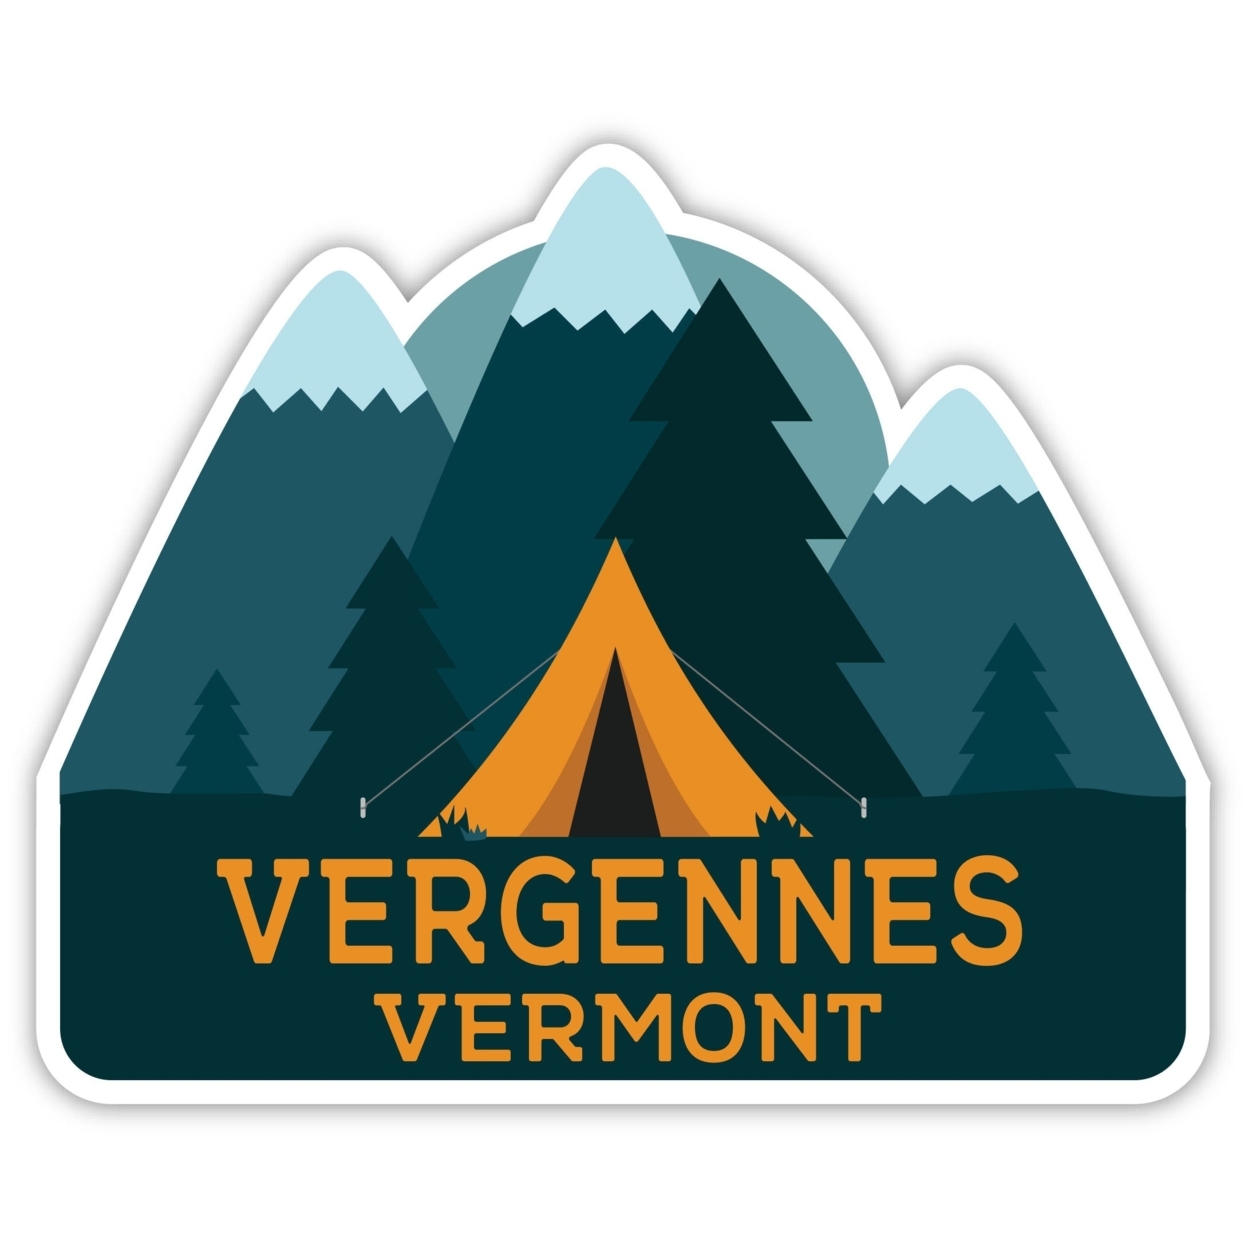 Vergennes Vermont Souvenir Decorative Stickers (Choose Theme And Size) - Single Unit, 2-Inch, Tent